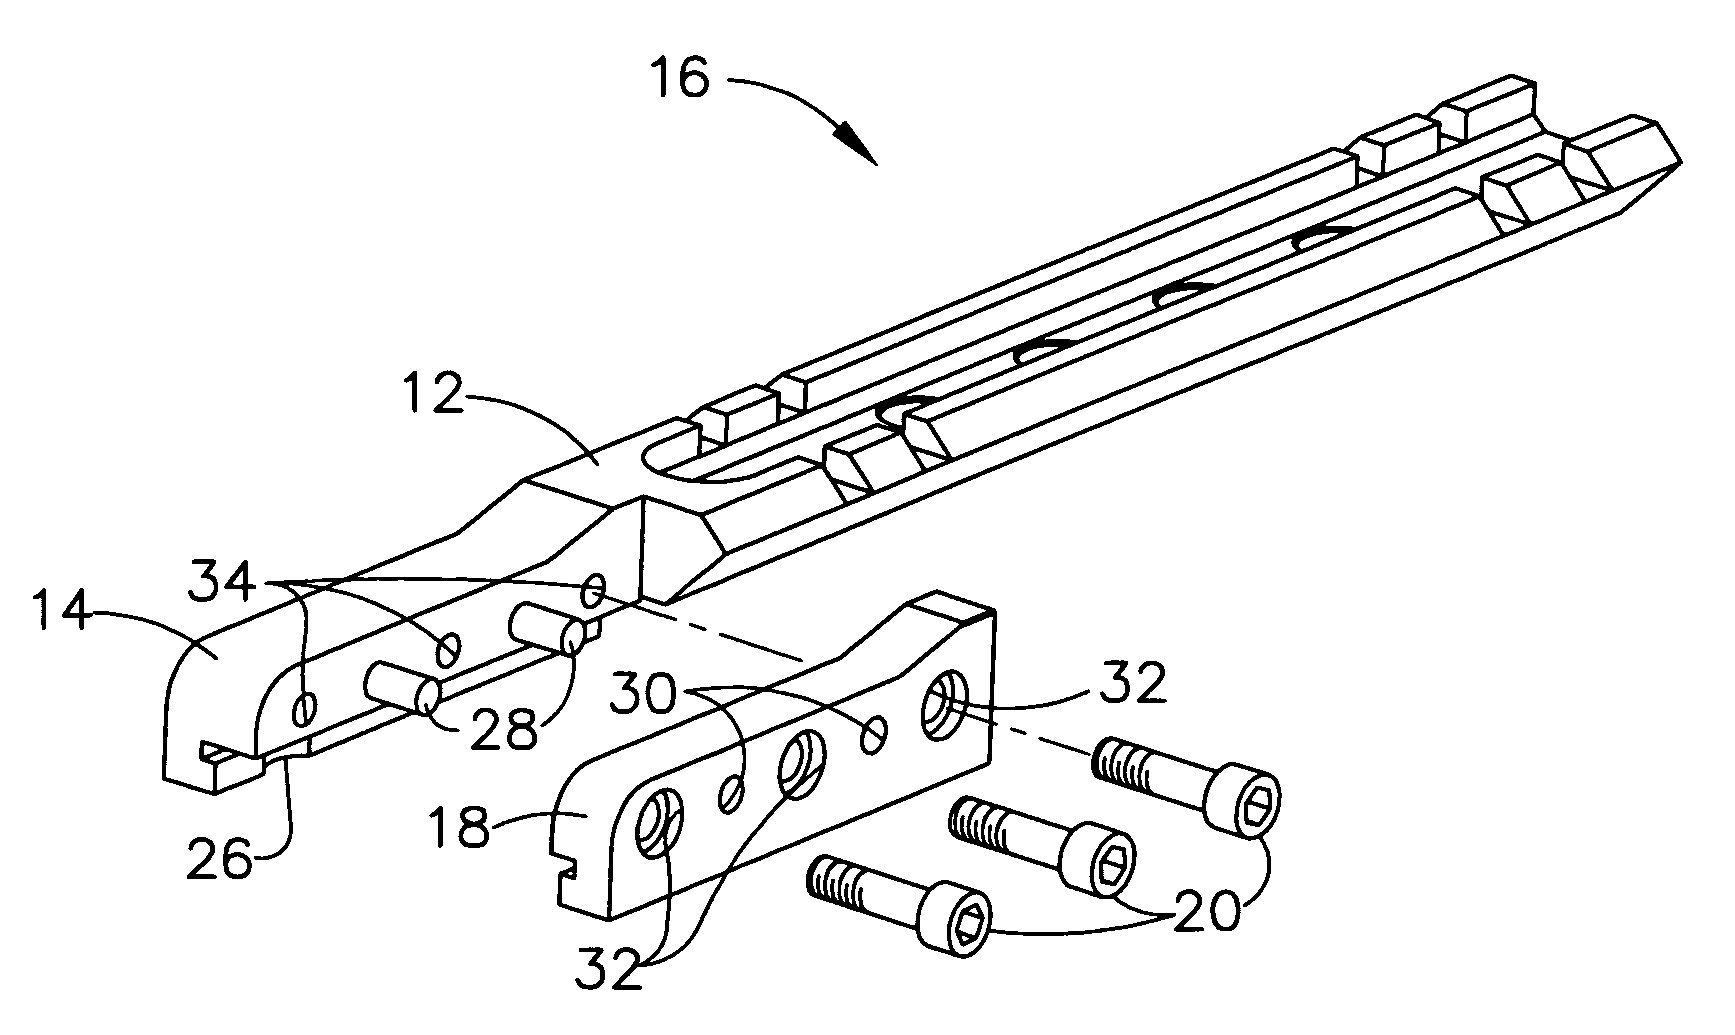 Telescope sight mount for a firearm